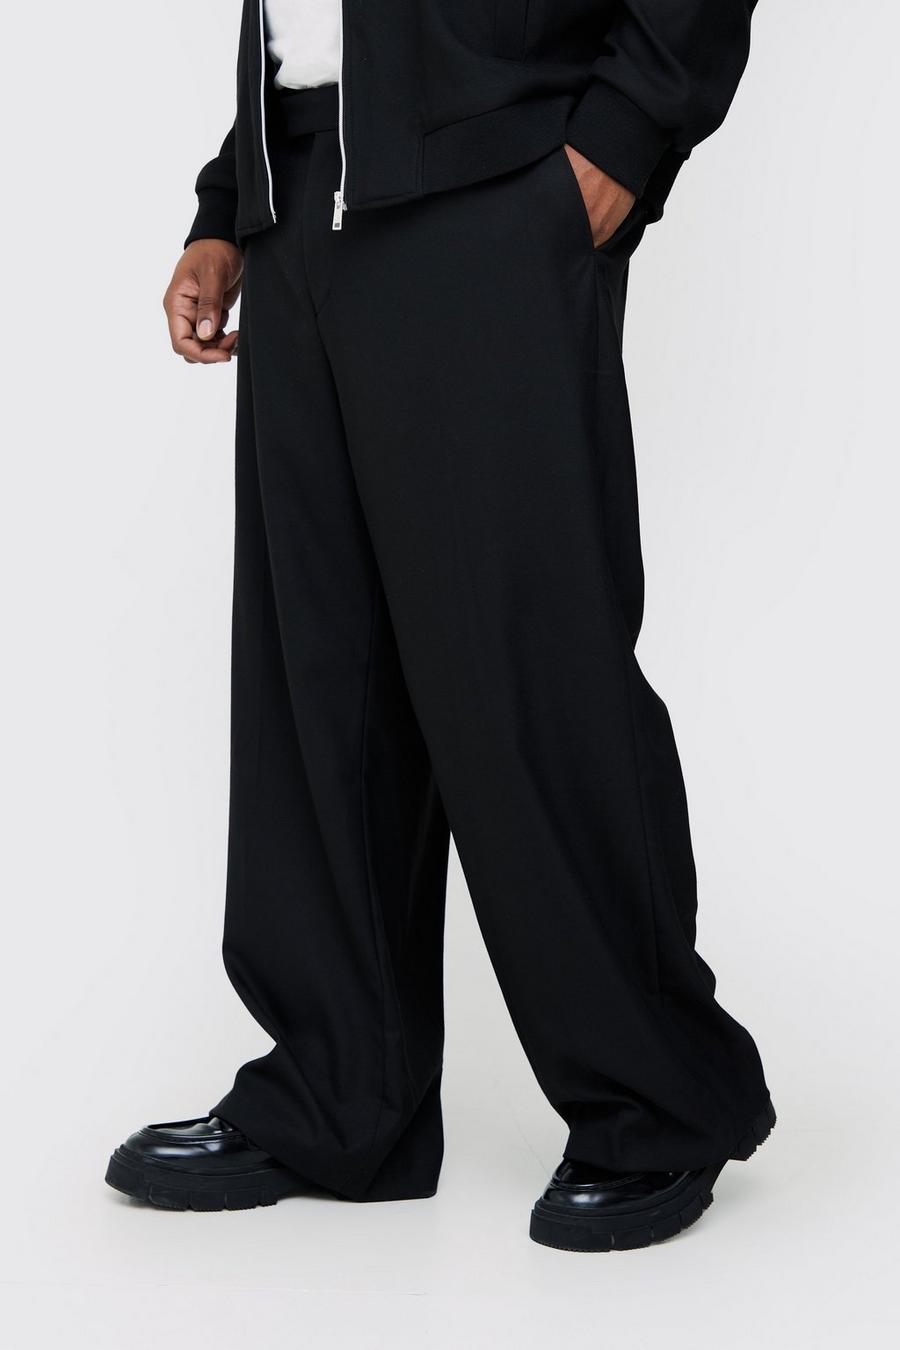 Pantaloni dritti Plus Size alla caviglia con righe laterali e laccetti, Black